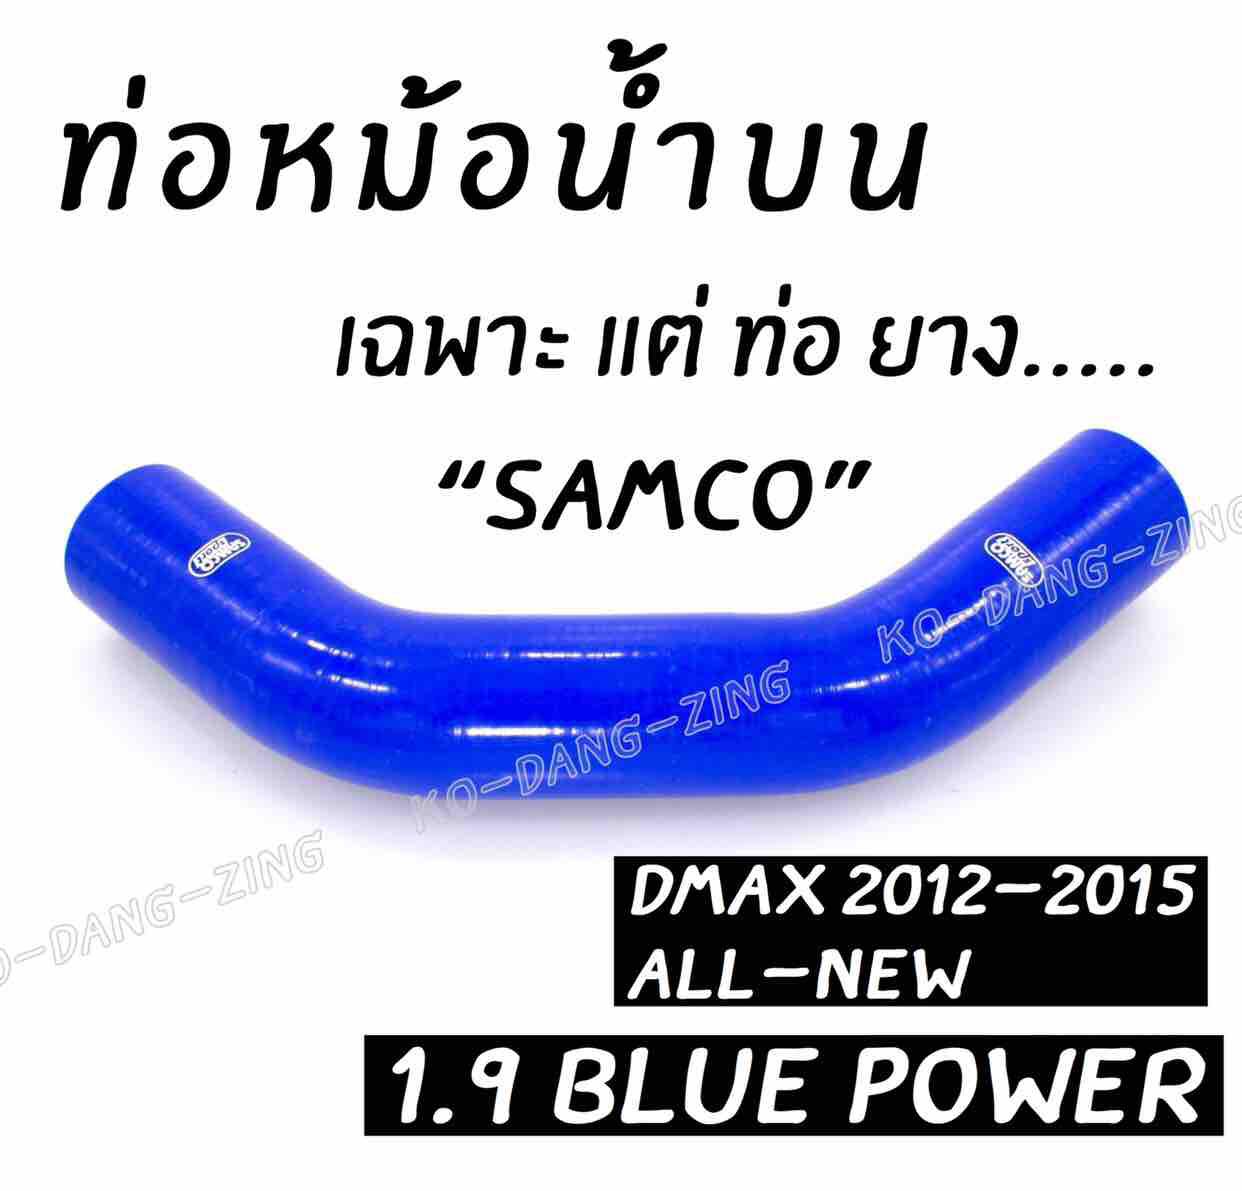 โกดังซิ่ง ท่อน้ำบน SAMCO สีน้ำเงิน (เฉพาะท่อยาง) DMAX 1.9 BLUE POWER